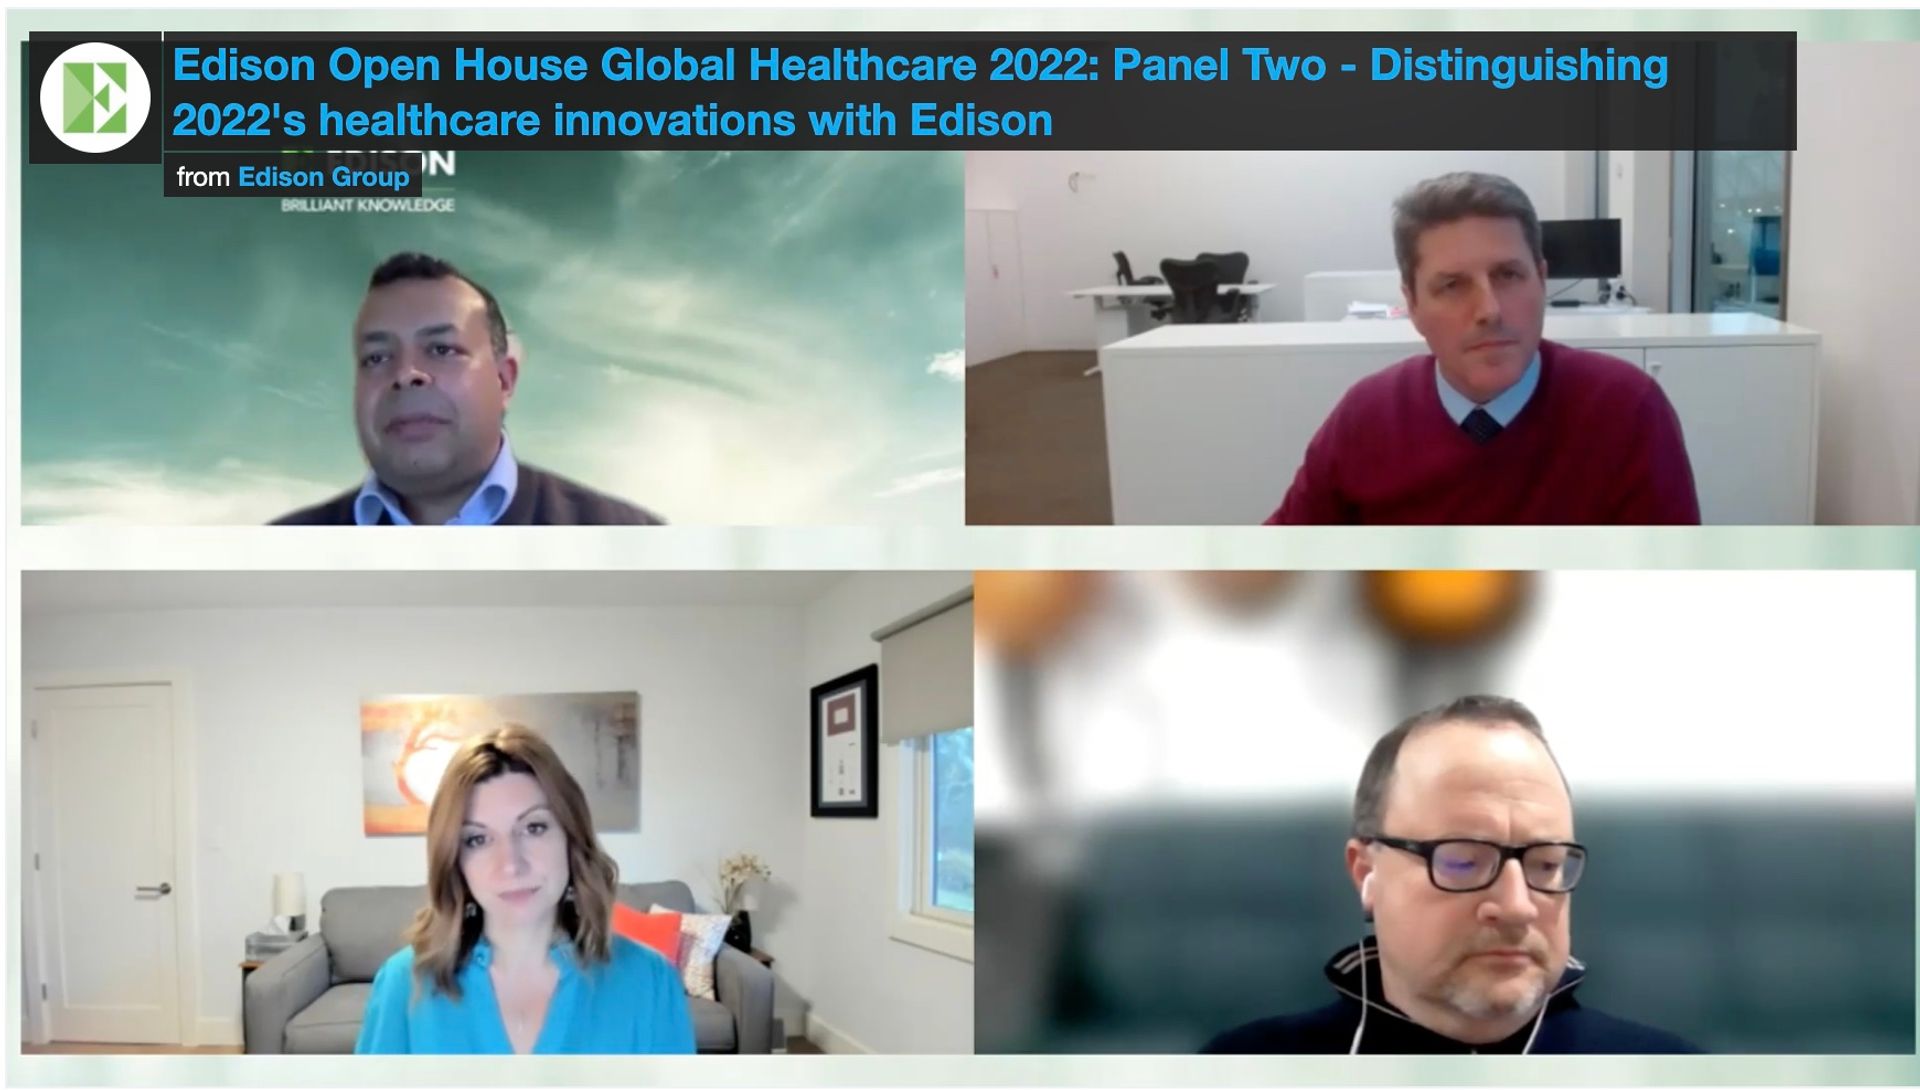 Tom Burt, Partner at Sofinnova Partners, speaks at Edison Group’s Open House Global Healthcare Event